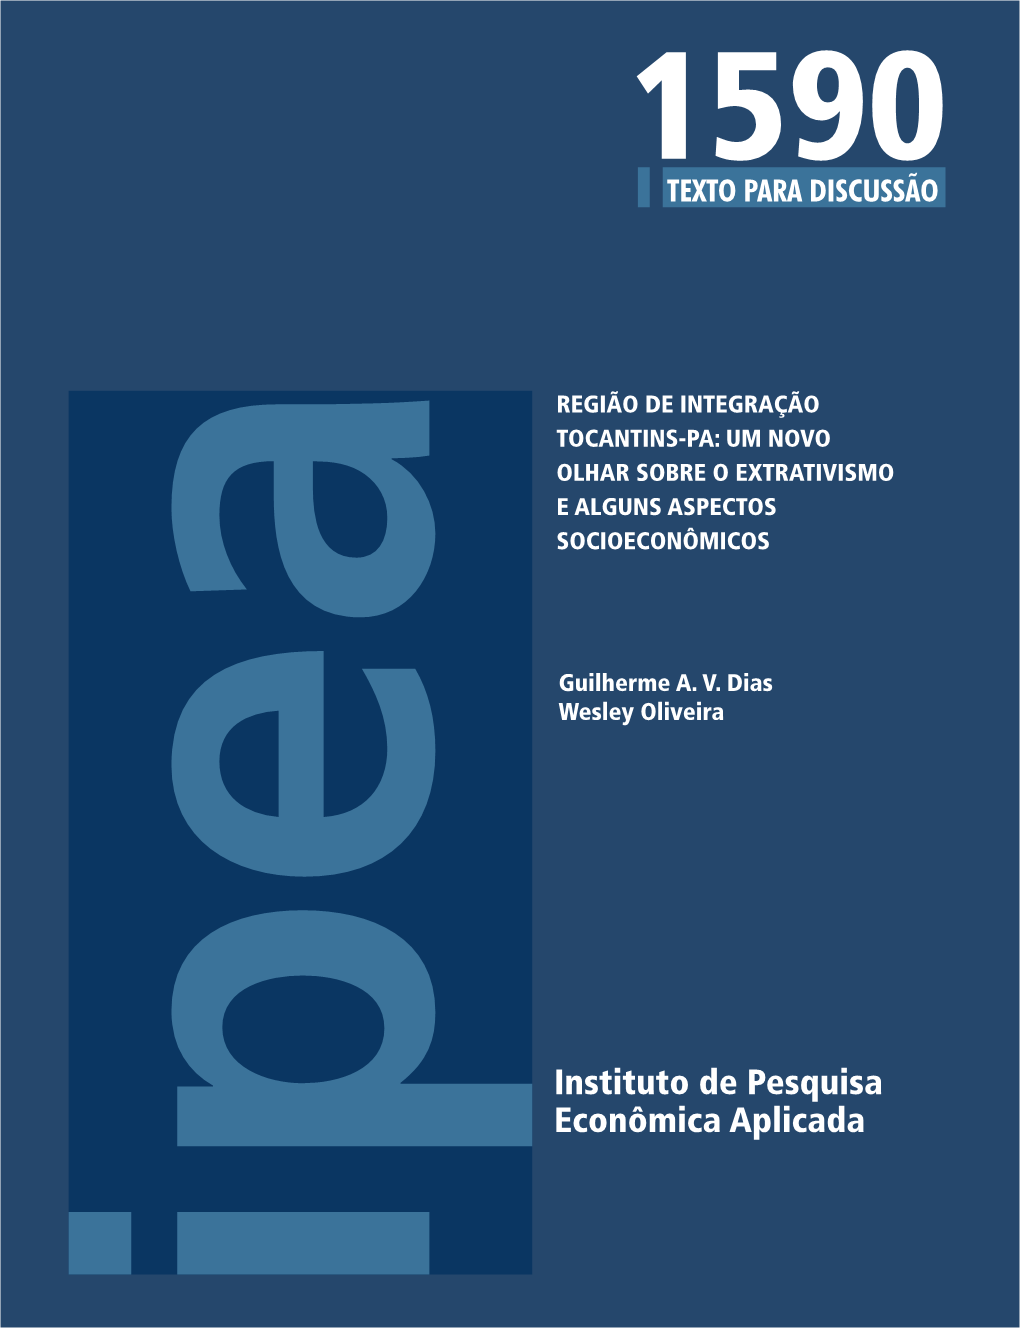 Região De Integração Tocantins-Pa: Um Novo Olhar Sobre O Extrativismo E Alguns Aspectos Socioeconômicos